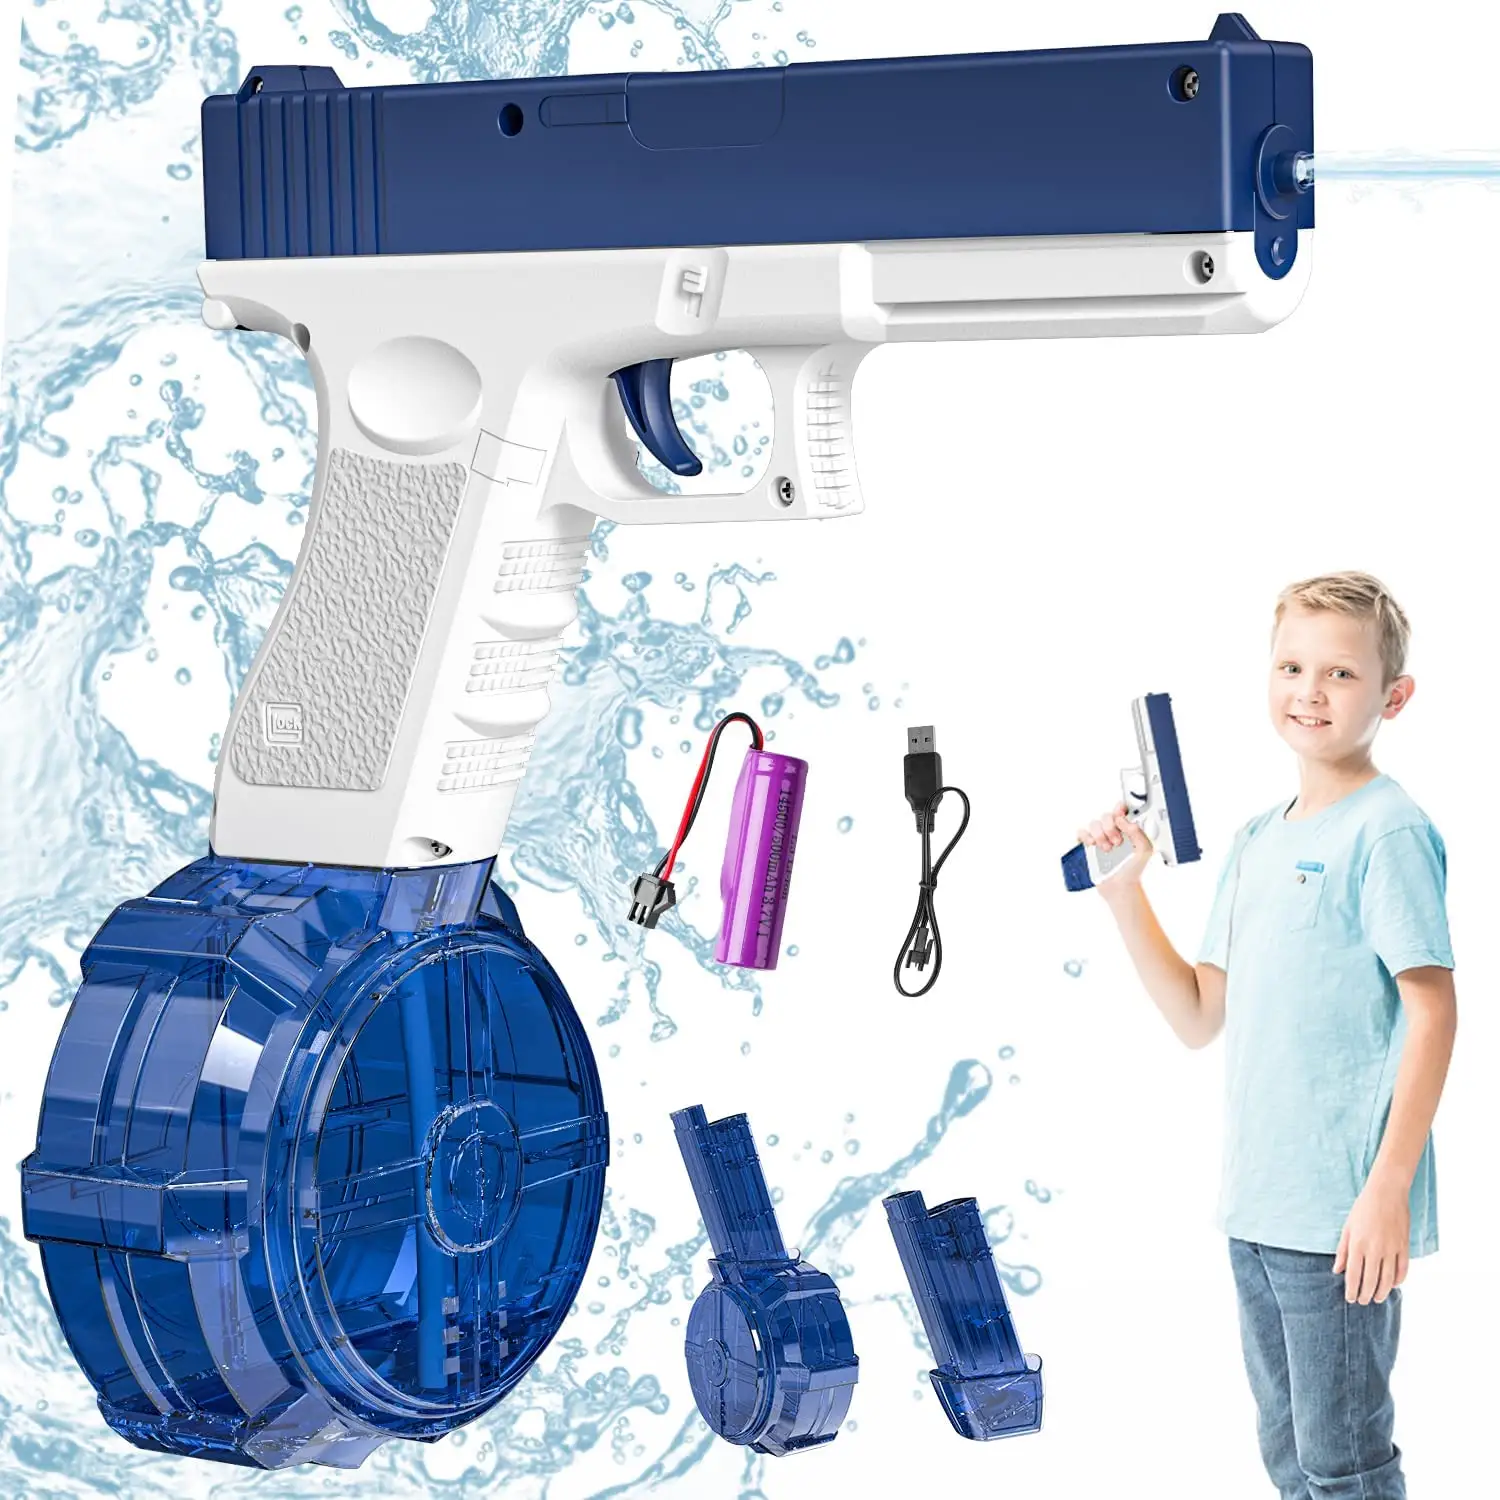 Automatische elektrische Wasser pistole mit hoher Kapazität Burst Blaster Batterie betriebene Langstrecken-Glock-Wasser pistole Outdoor-Sommers pielzeug